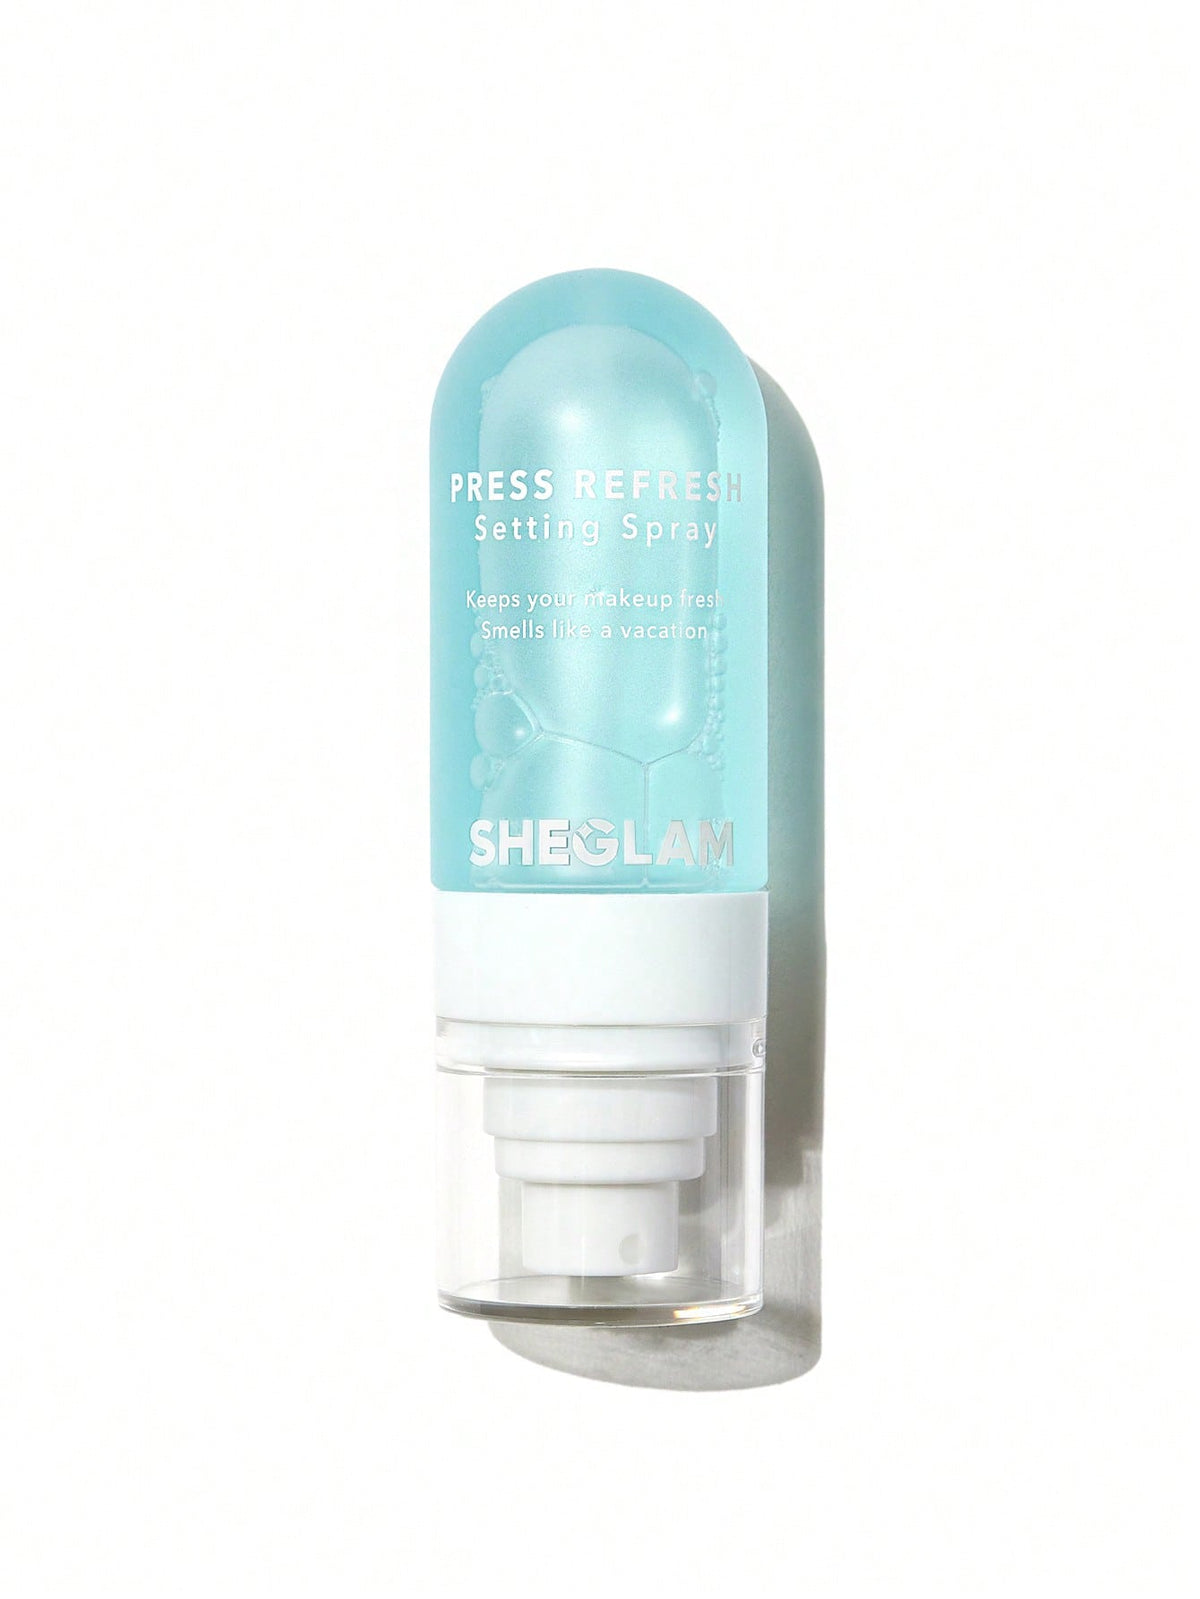 Sheglam Press Refresh Setting Spray